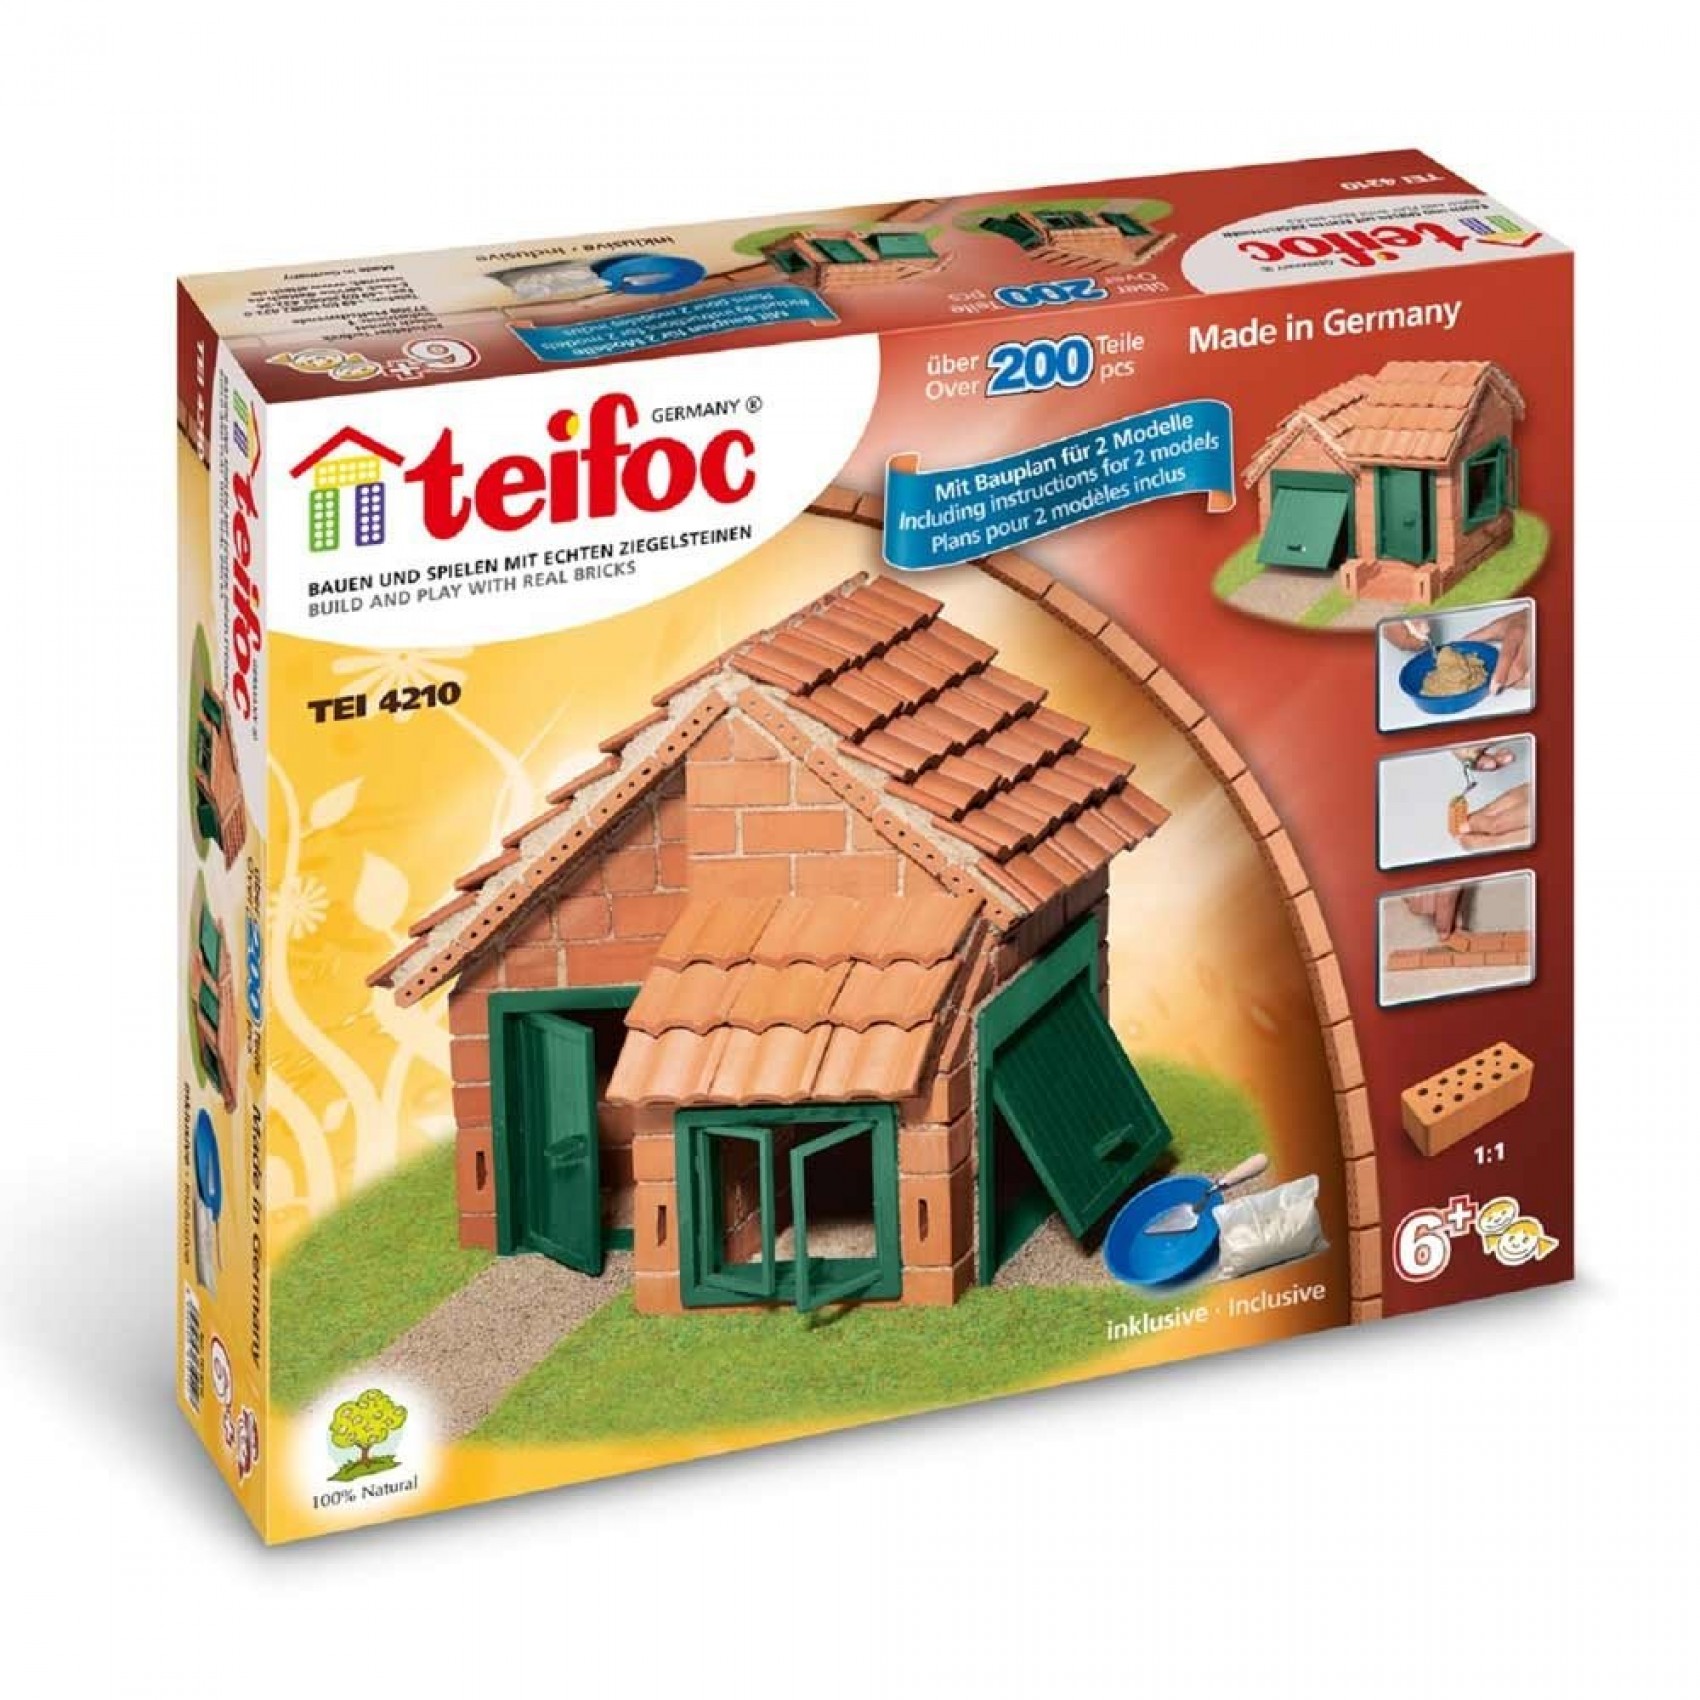 Teifoc Jeu Kit de construction en briques Enfant 6 ans + - Un jeux des  jouets